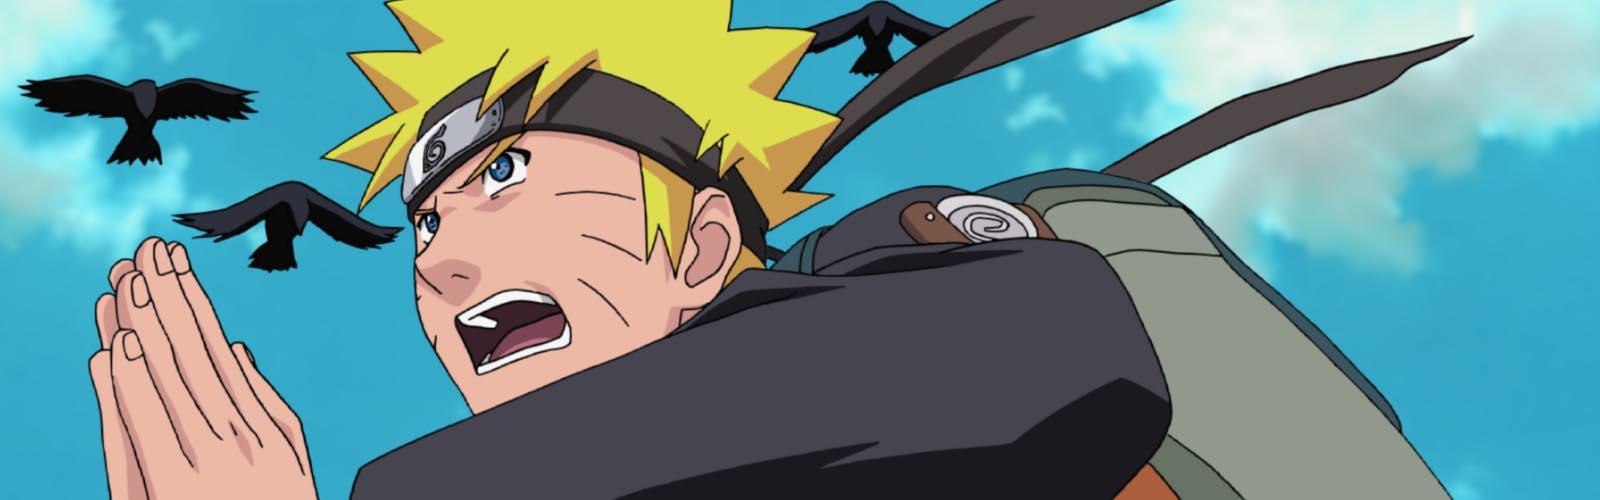 Films d'animation- Naruto, Naruto Shippuden, Boruto